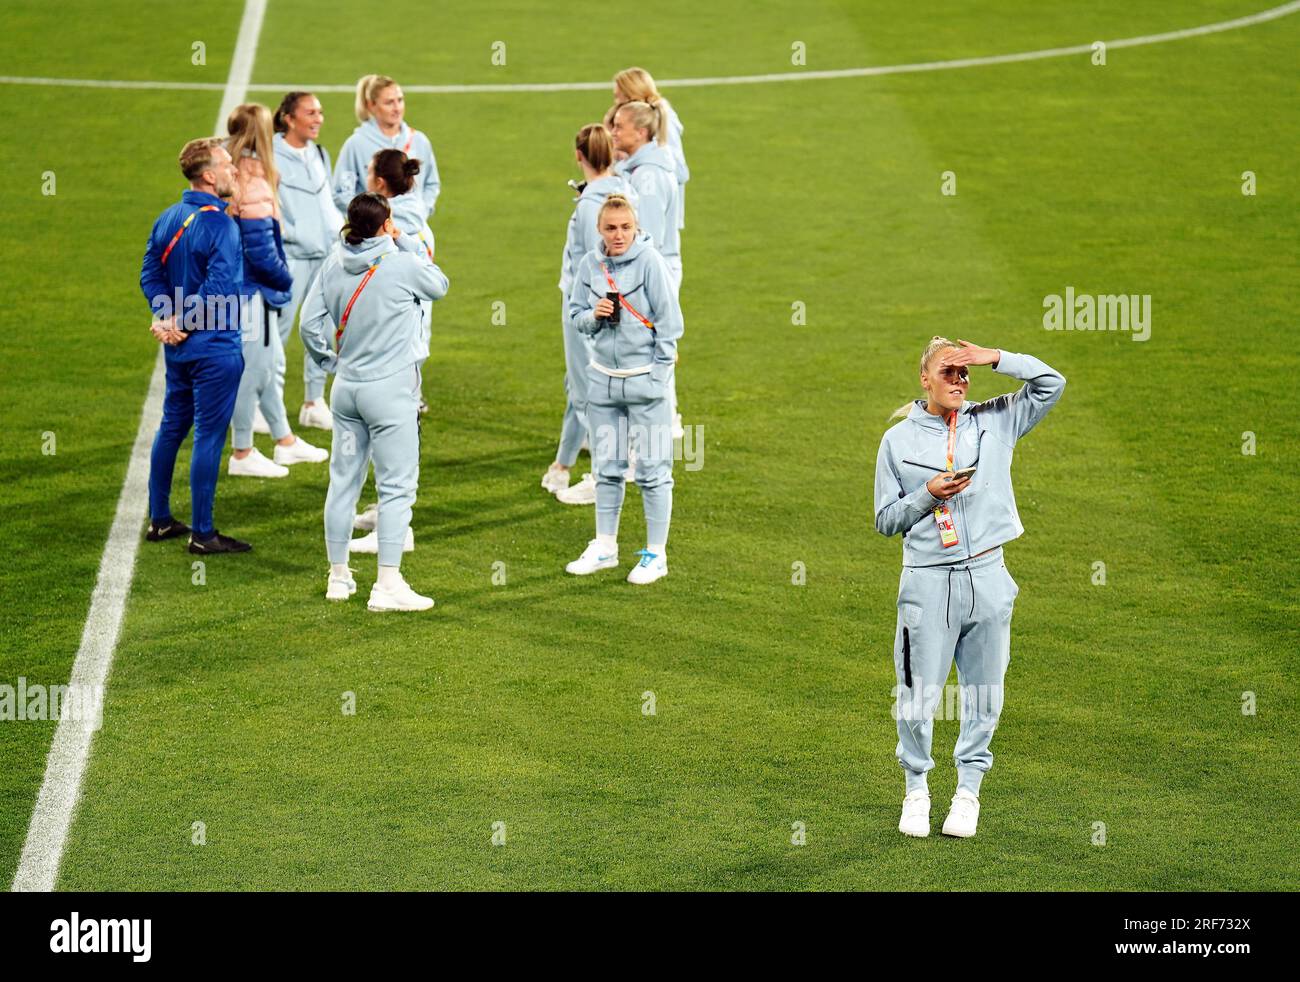 La portiere inglese Ellie Roebuck (destra) ispeziona il campo in vista della Coppa del mondo femminile FIFA 2023, partita del gruppo D allo stadio Hindmarsh, Adelaide, Australia. Data foto: Martedì 1 agosto 2023. Foto Stock